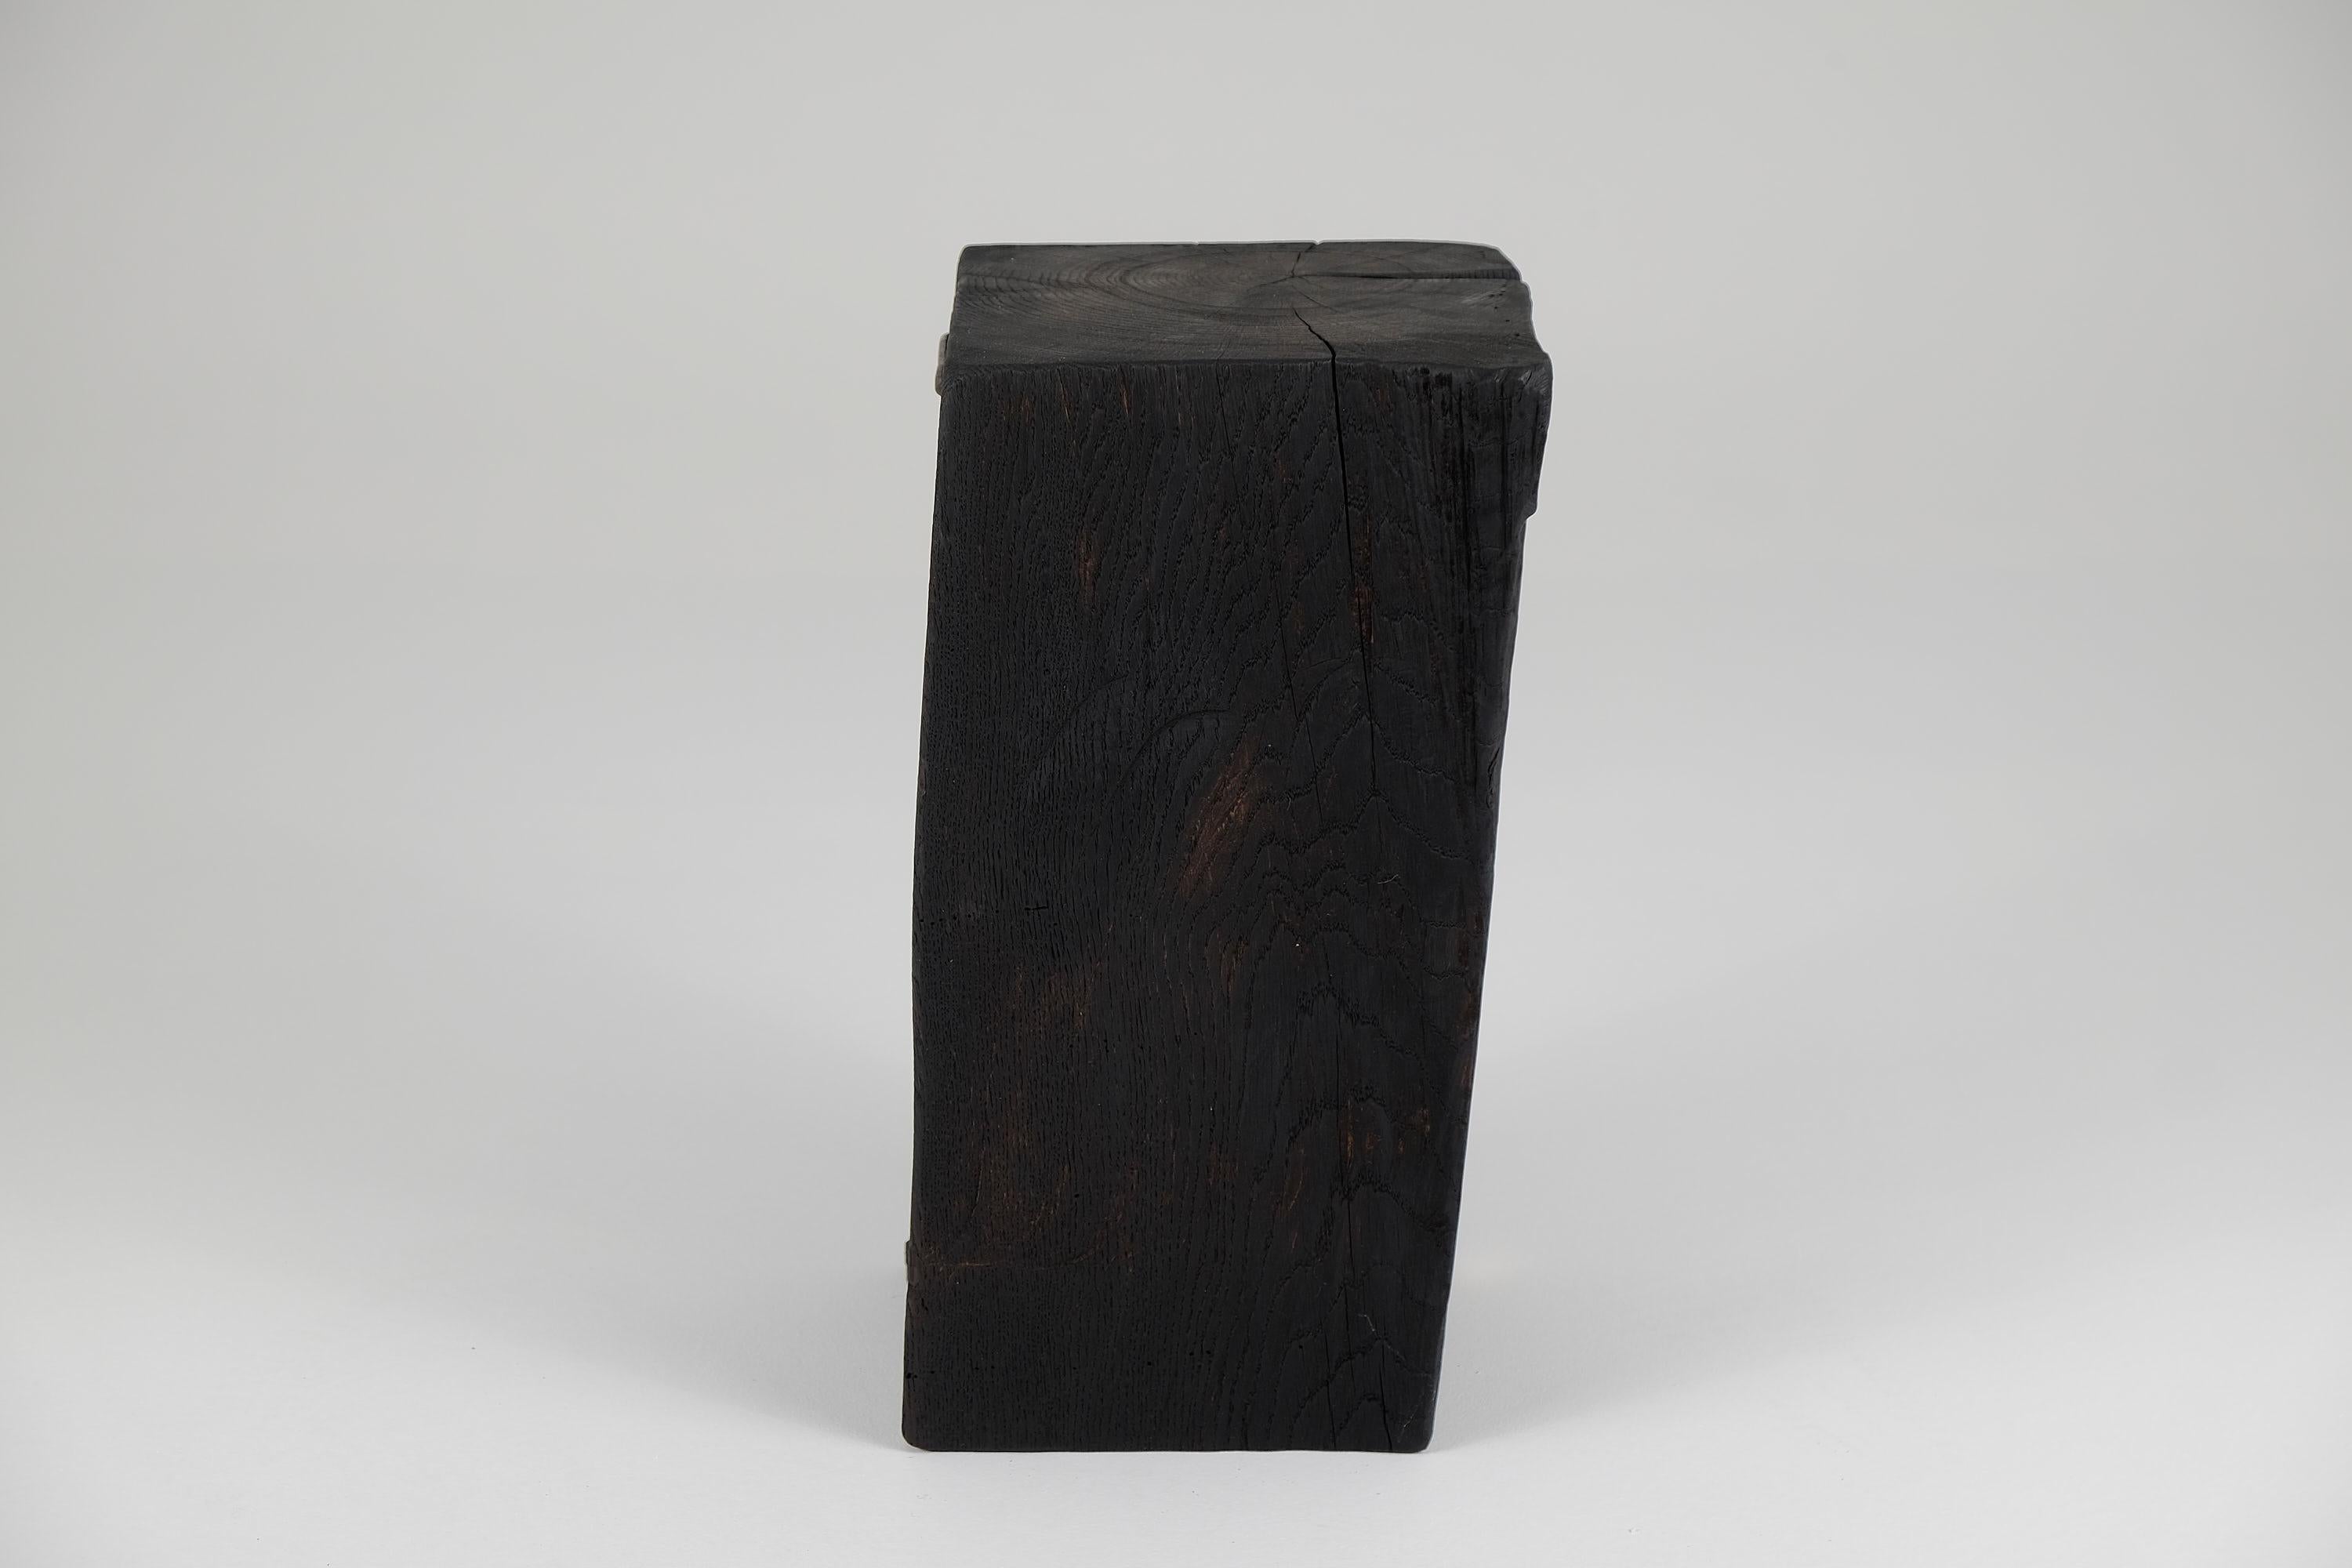 Solid Burnt Wood, Side Table, Stool, Primative Design, Brutalist For Sale 4